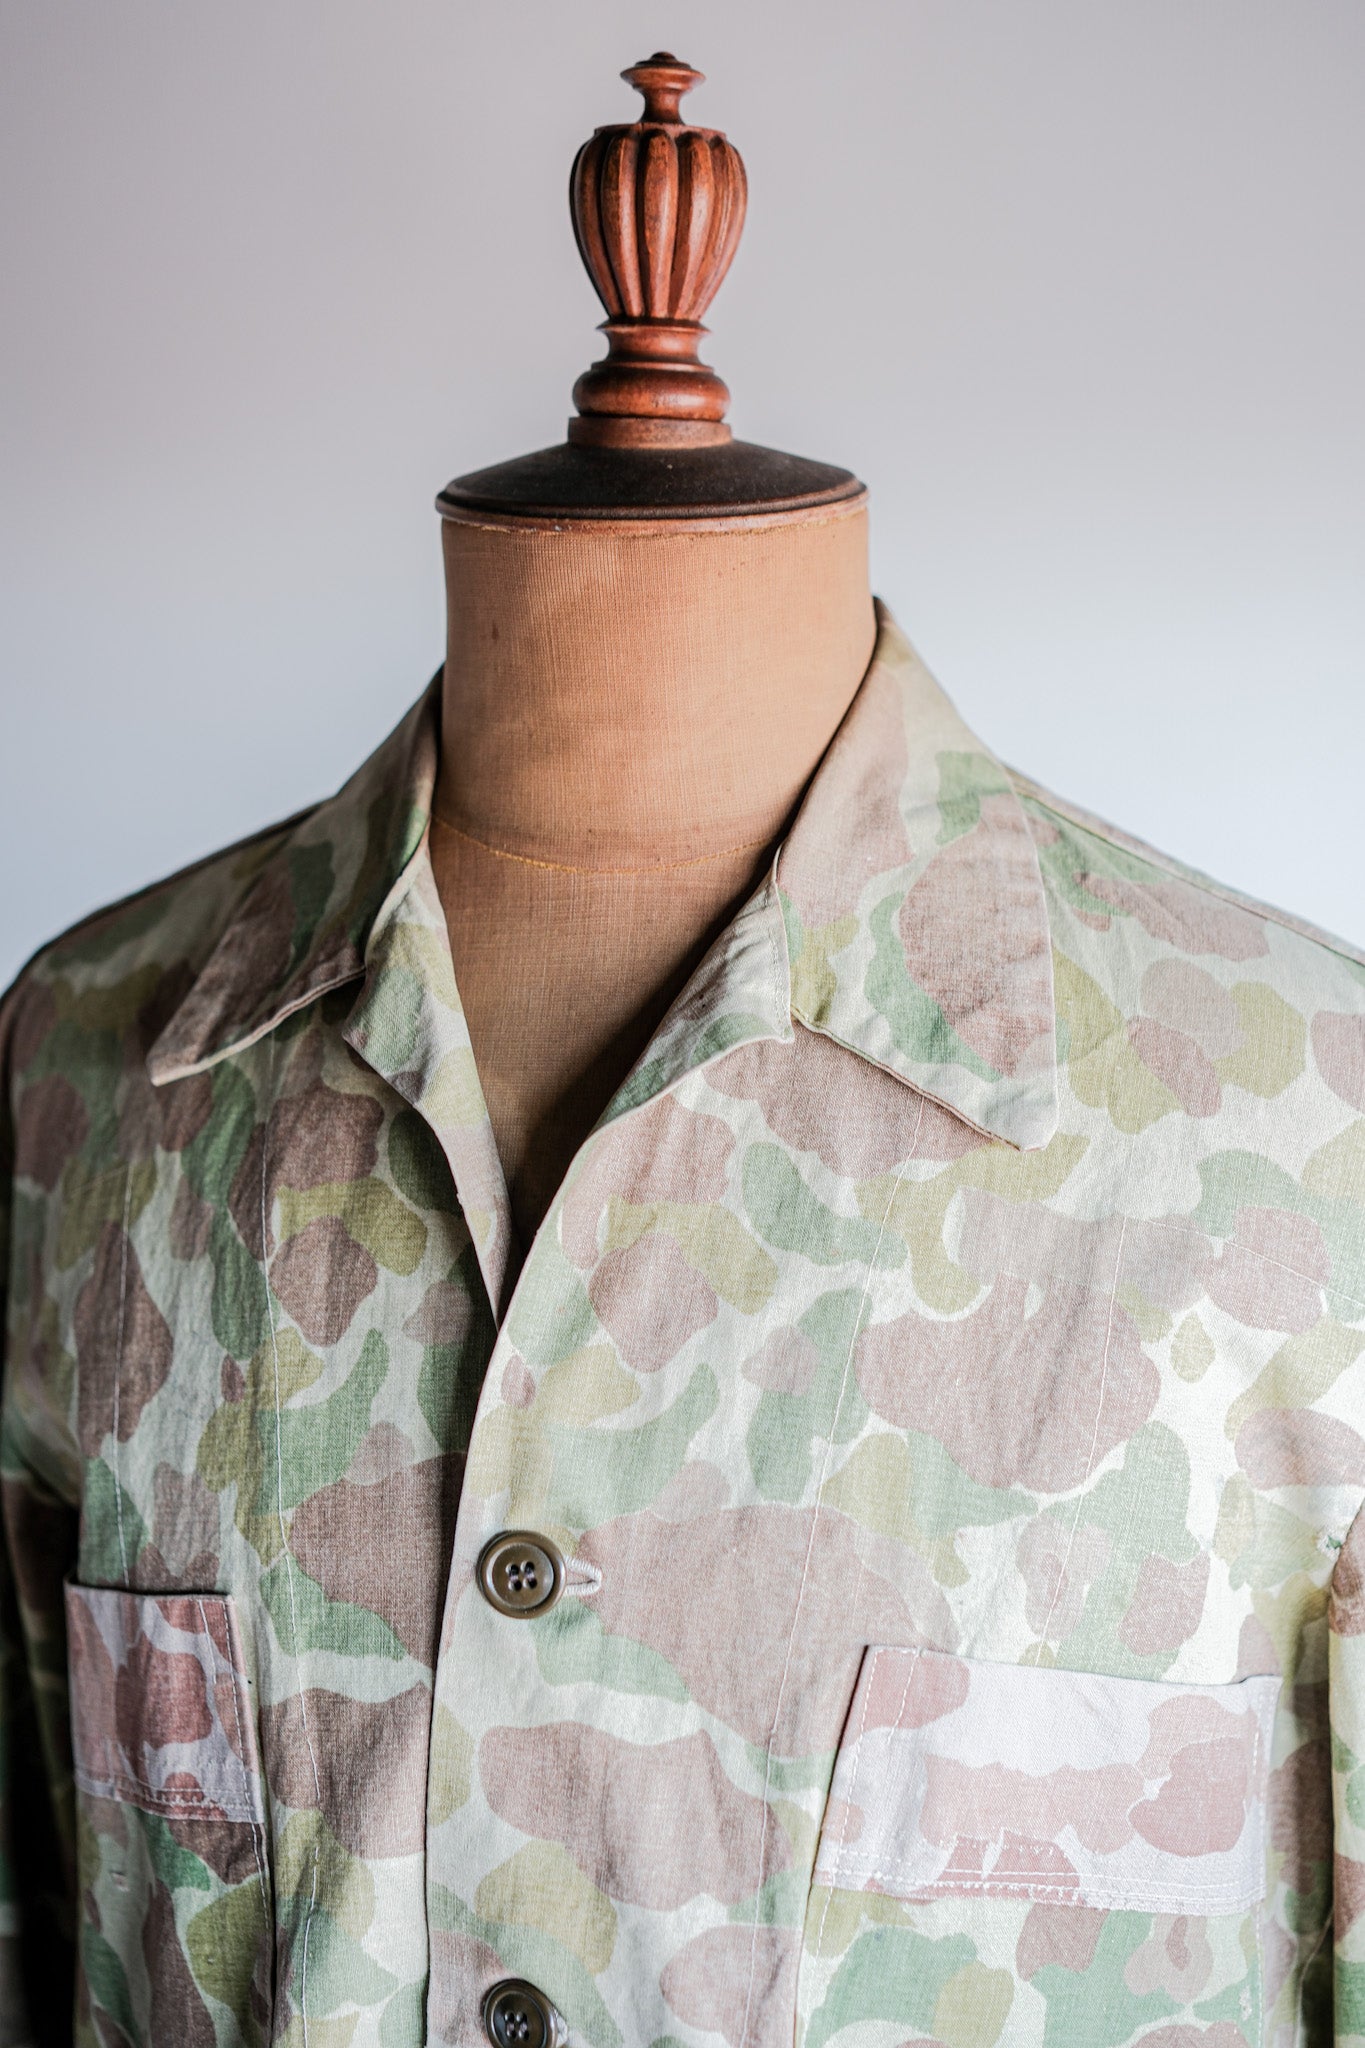 [〜50年代]美國復古佔領泰勒製造了青蛙偽裝夾克“ umis.m.c材料”